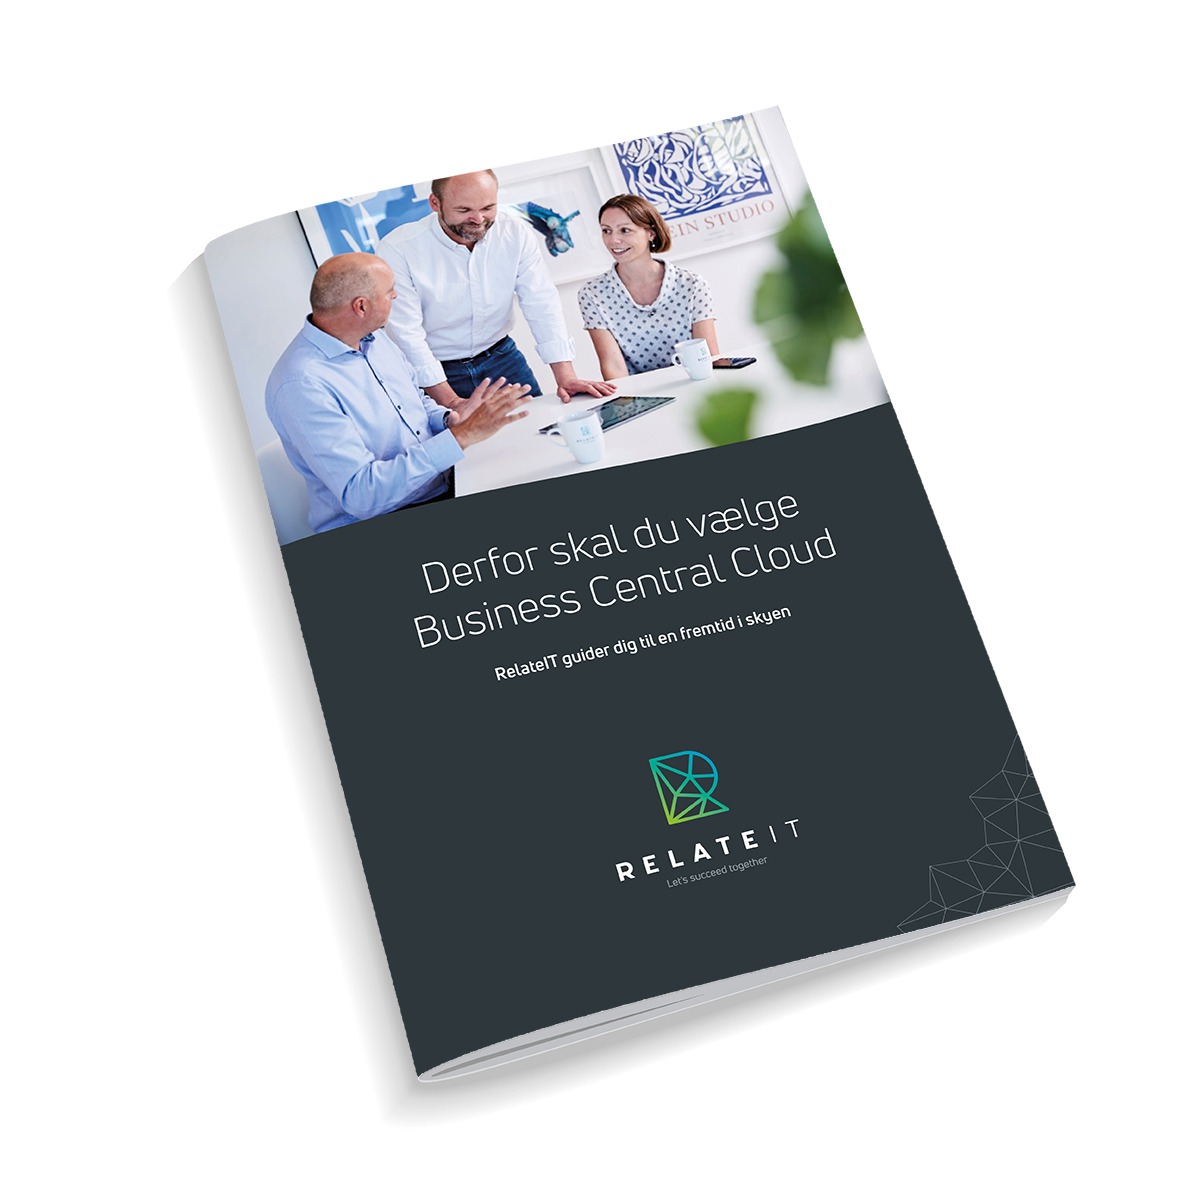 Business Central Cloud